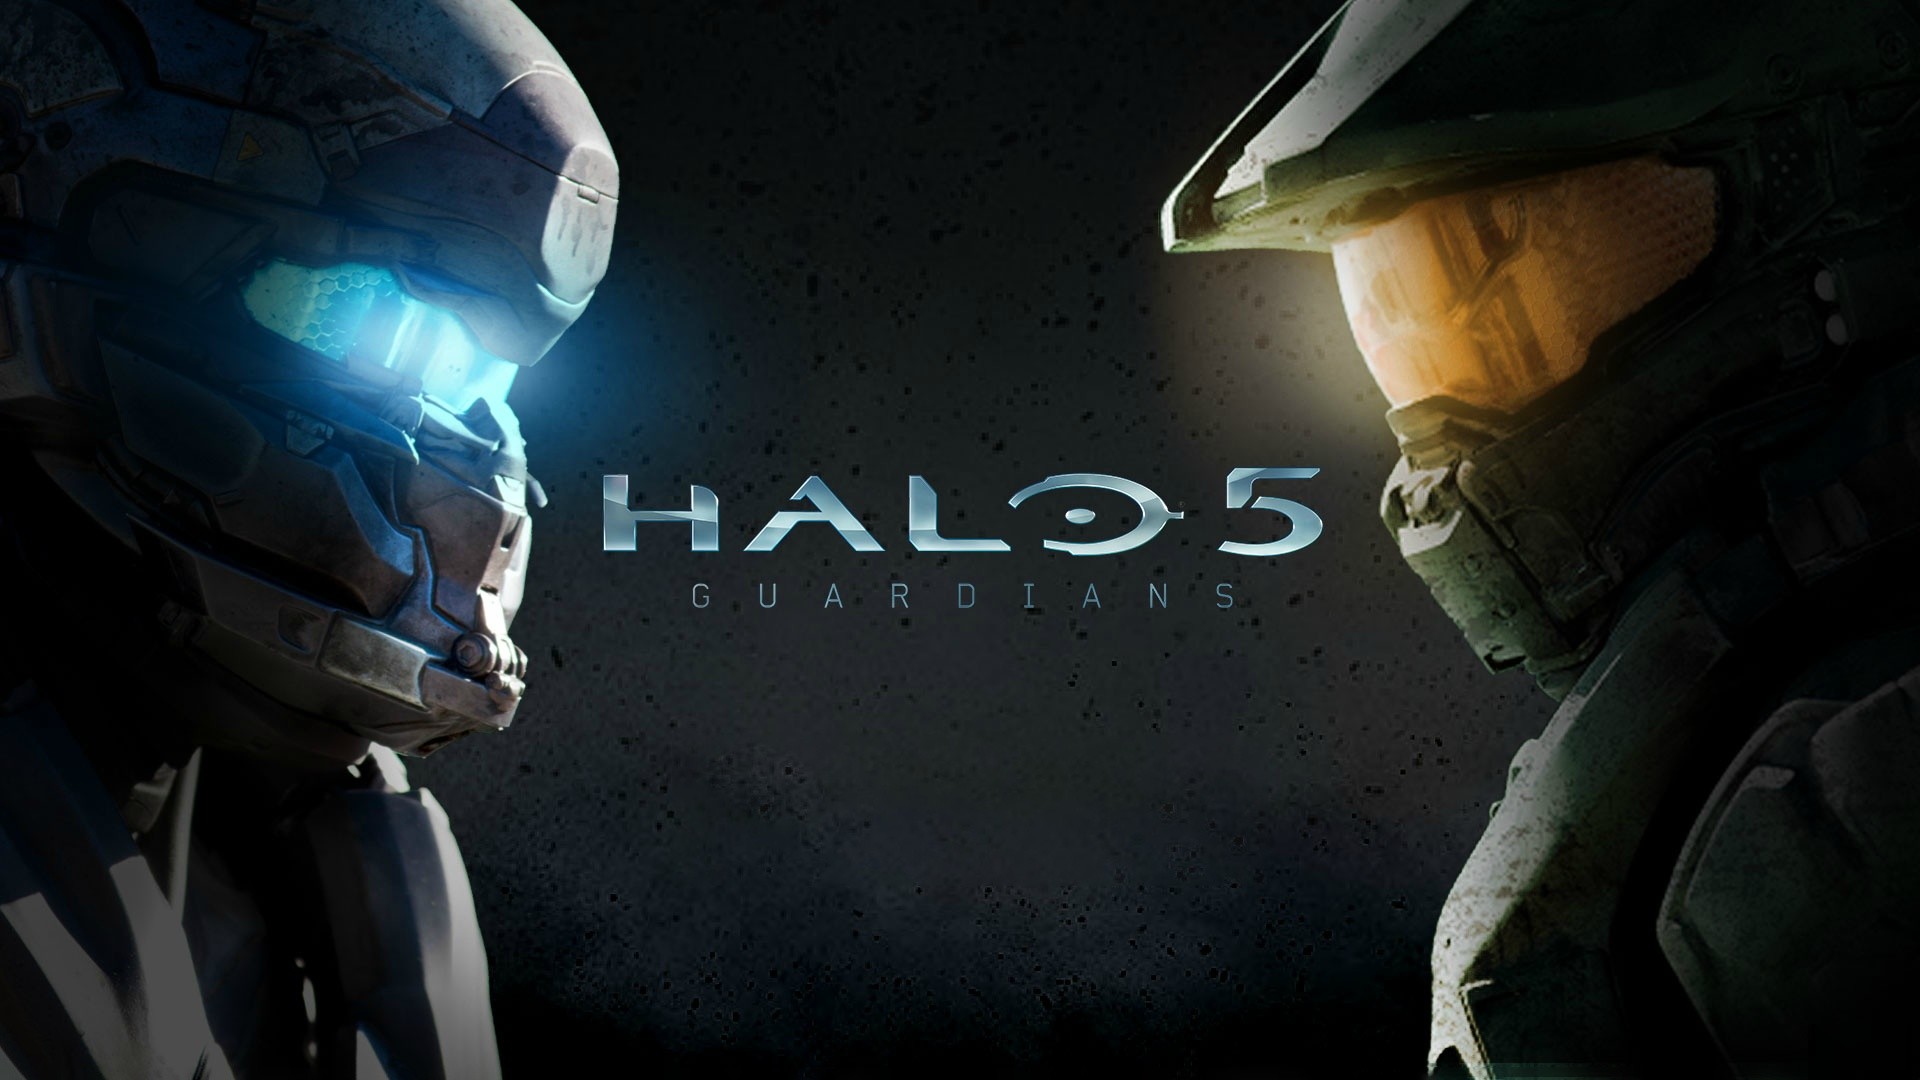 1920x1080 Nieuwe Halo 5 DLC teaser, Halo Wars 2 images uitgebracht .